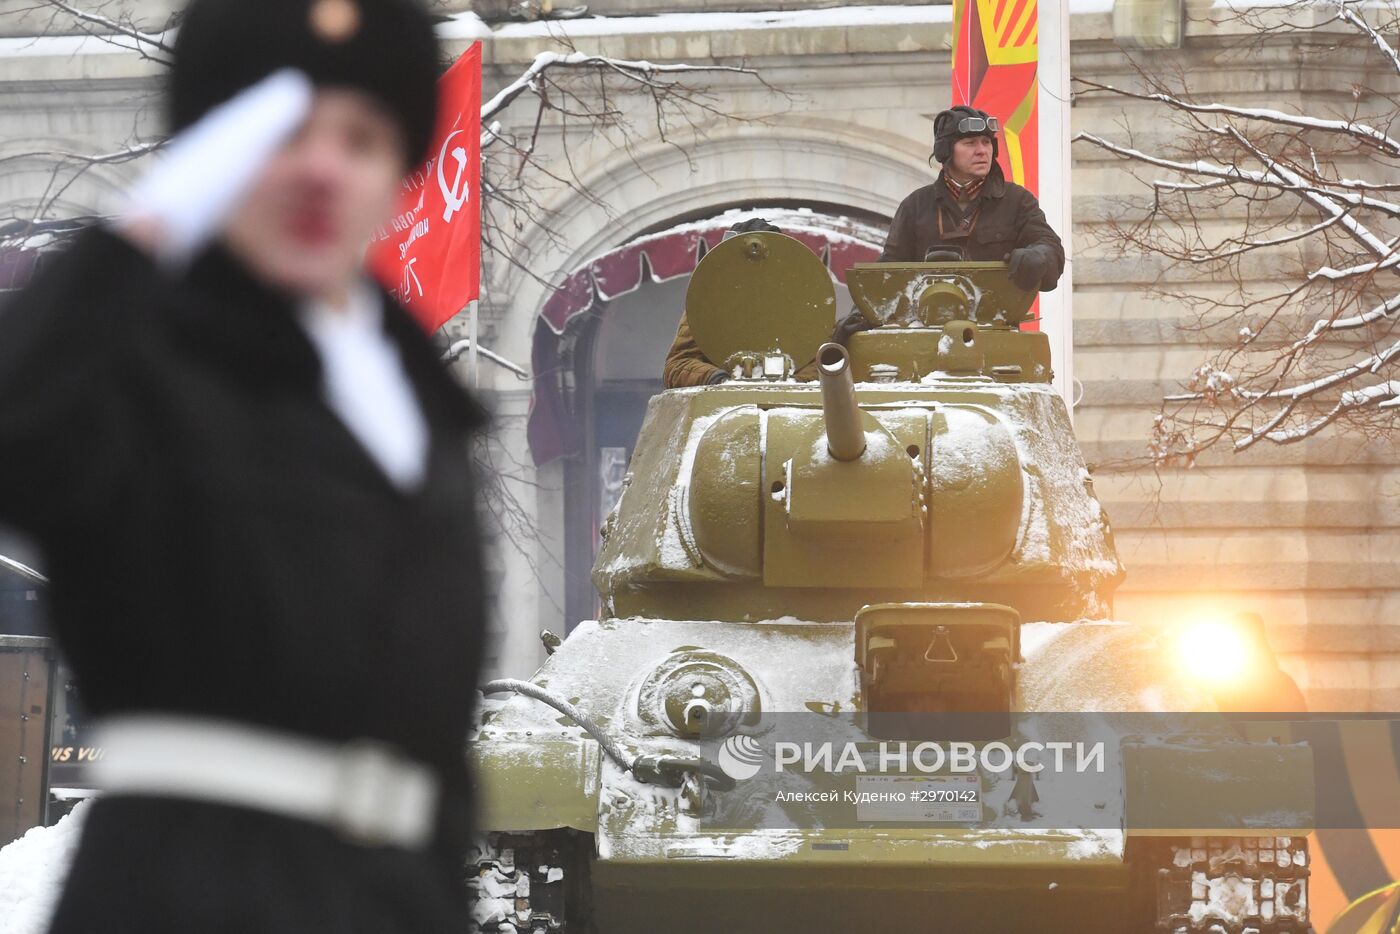 Марш, посвященный 75-й годовщине военного парада 1941 года на Красной площади